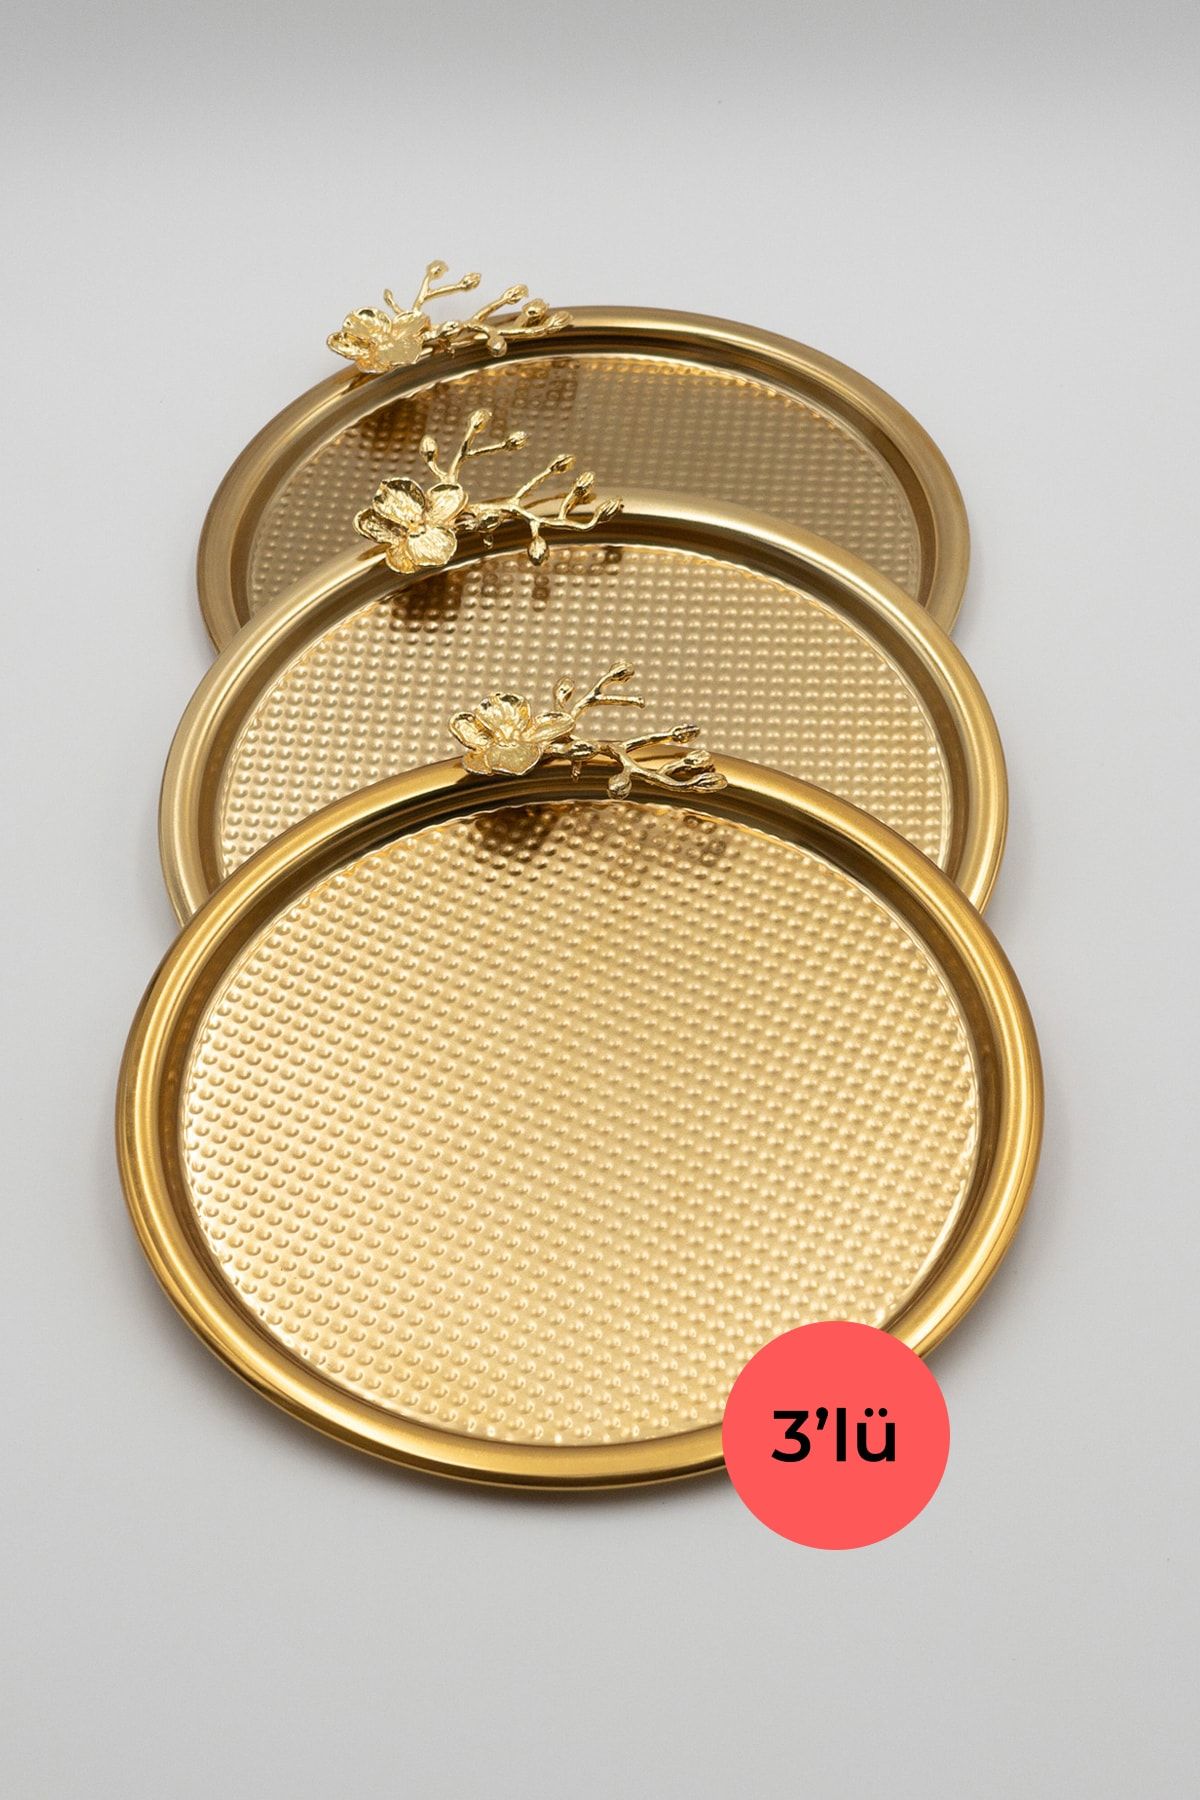 Fiyakalı Ürünler Atölyesi 3'lü Japon Güllü Yuvarlak Gold Sunum Tepsisi, Pasta Çay Kahve Dekoratif Servis Tepsisi 22cm